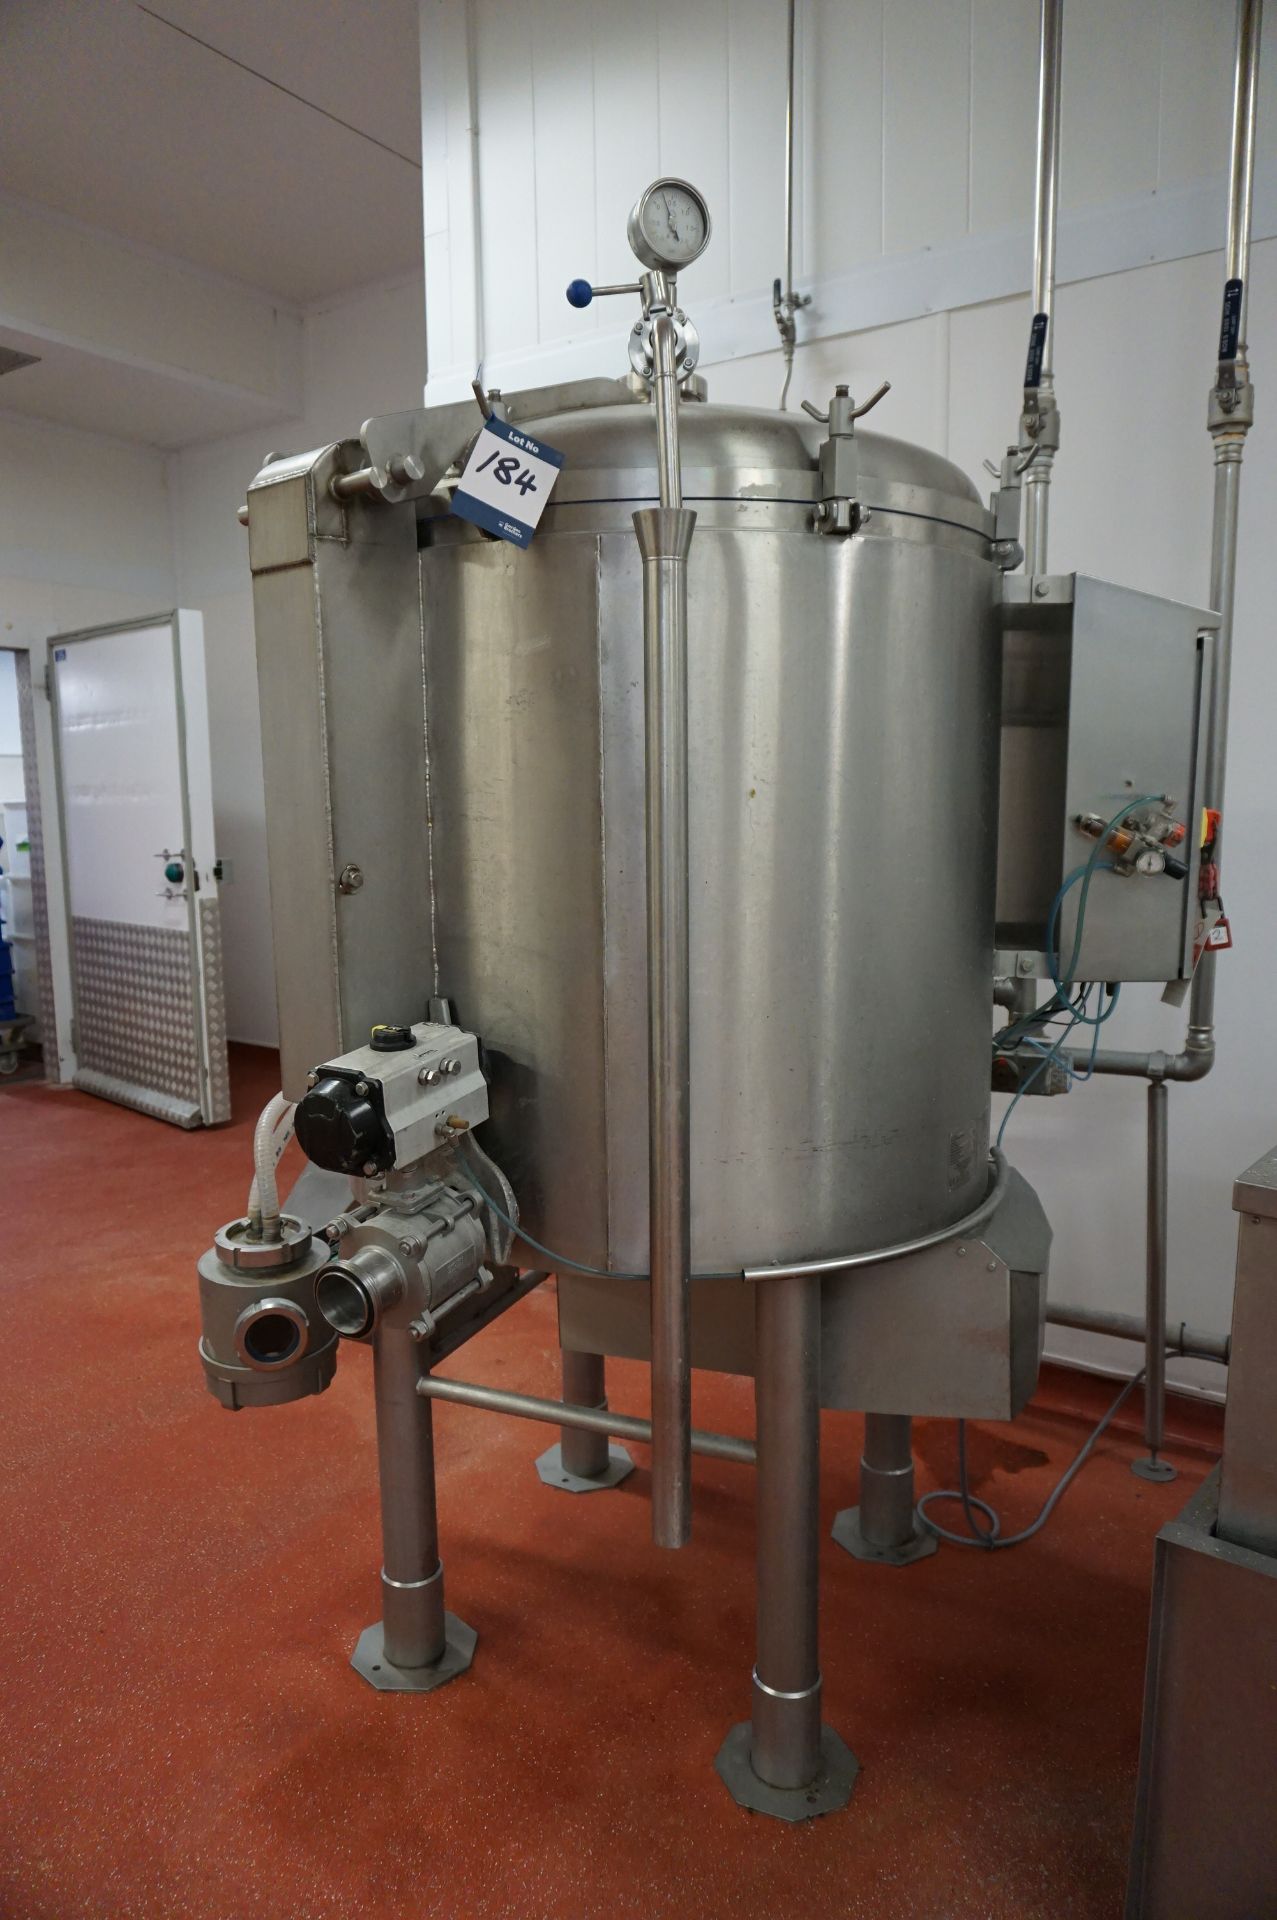 DC Norris, Model: DA 300, 300L pressurised glycol cooling vat, Serial No. N2719 (2012) with